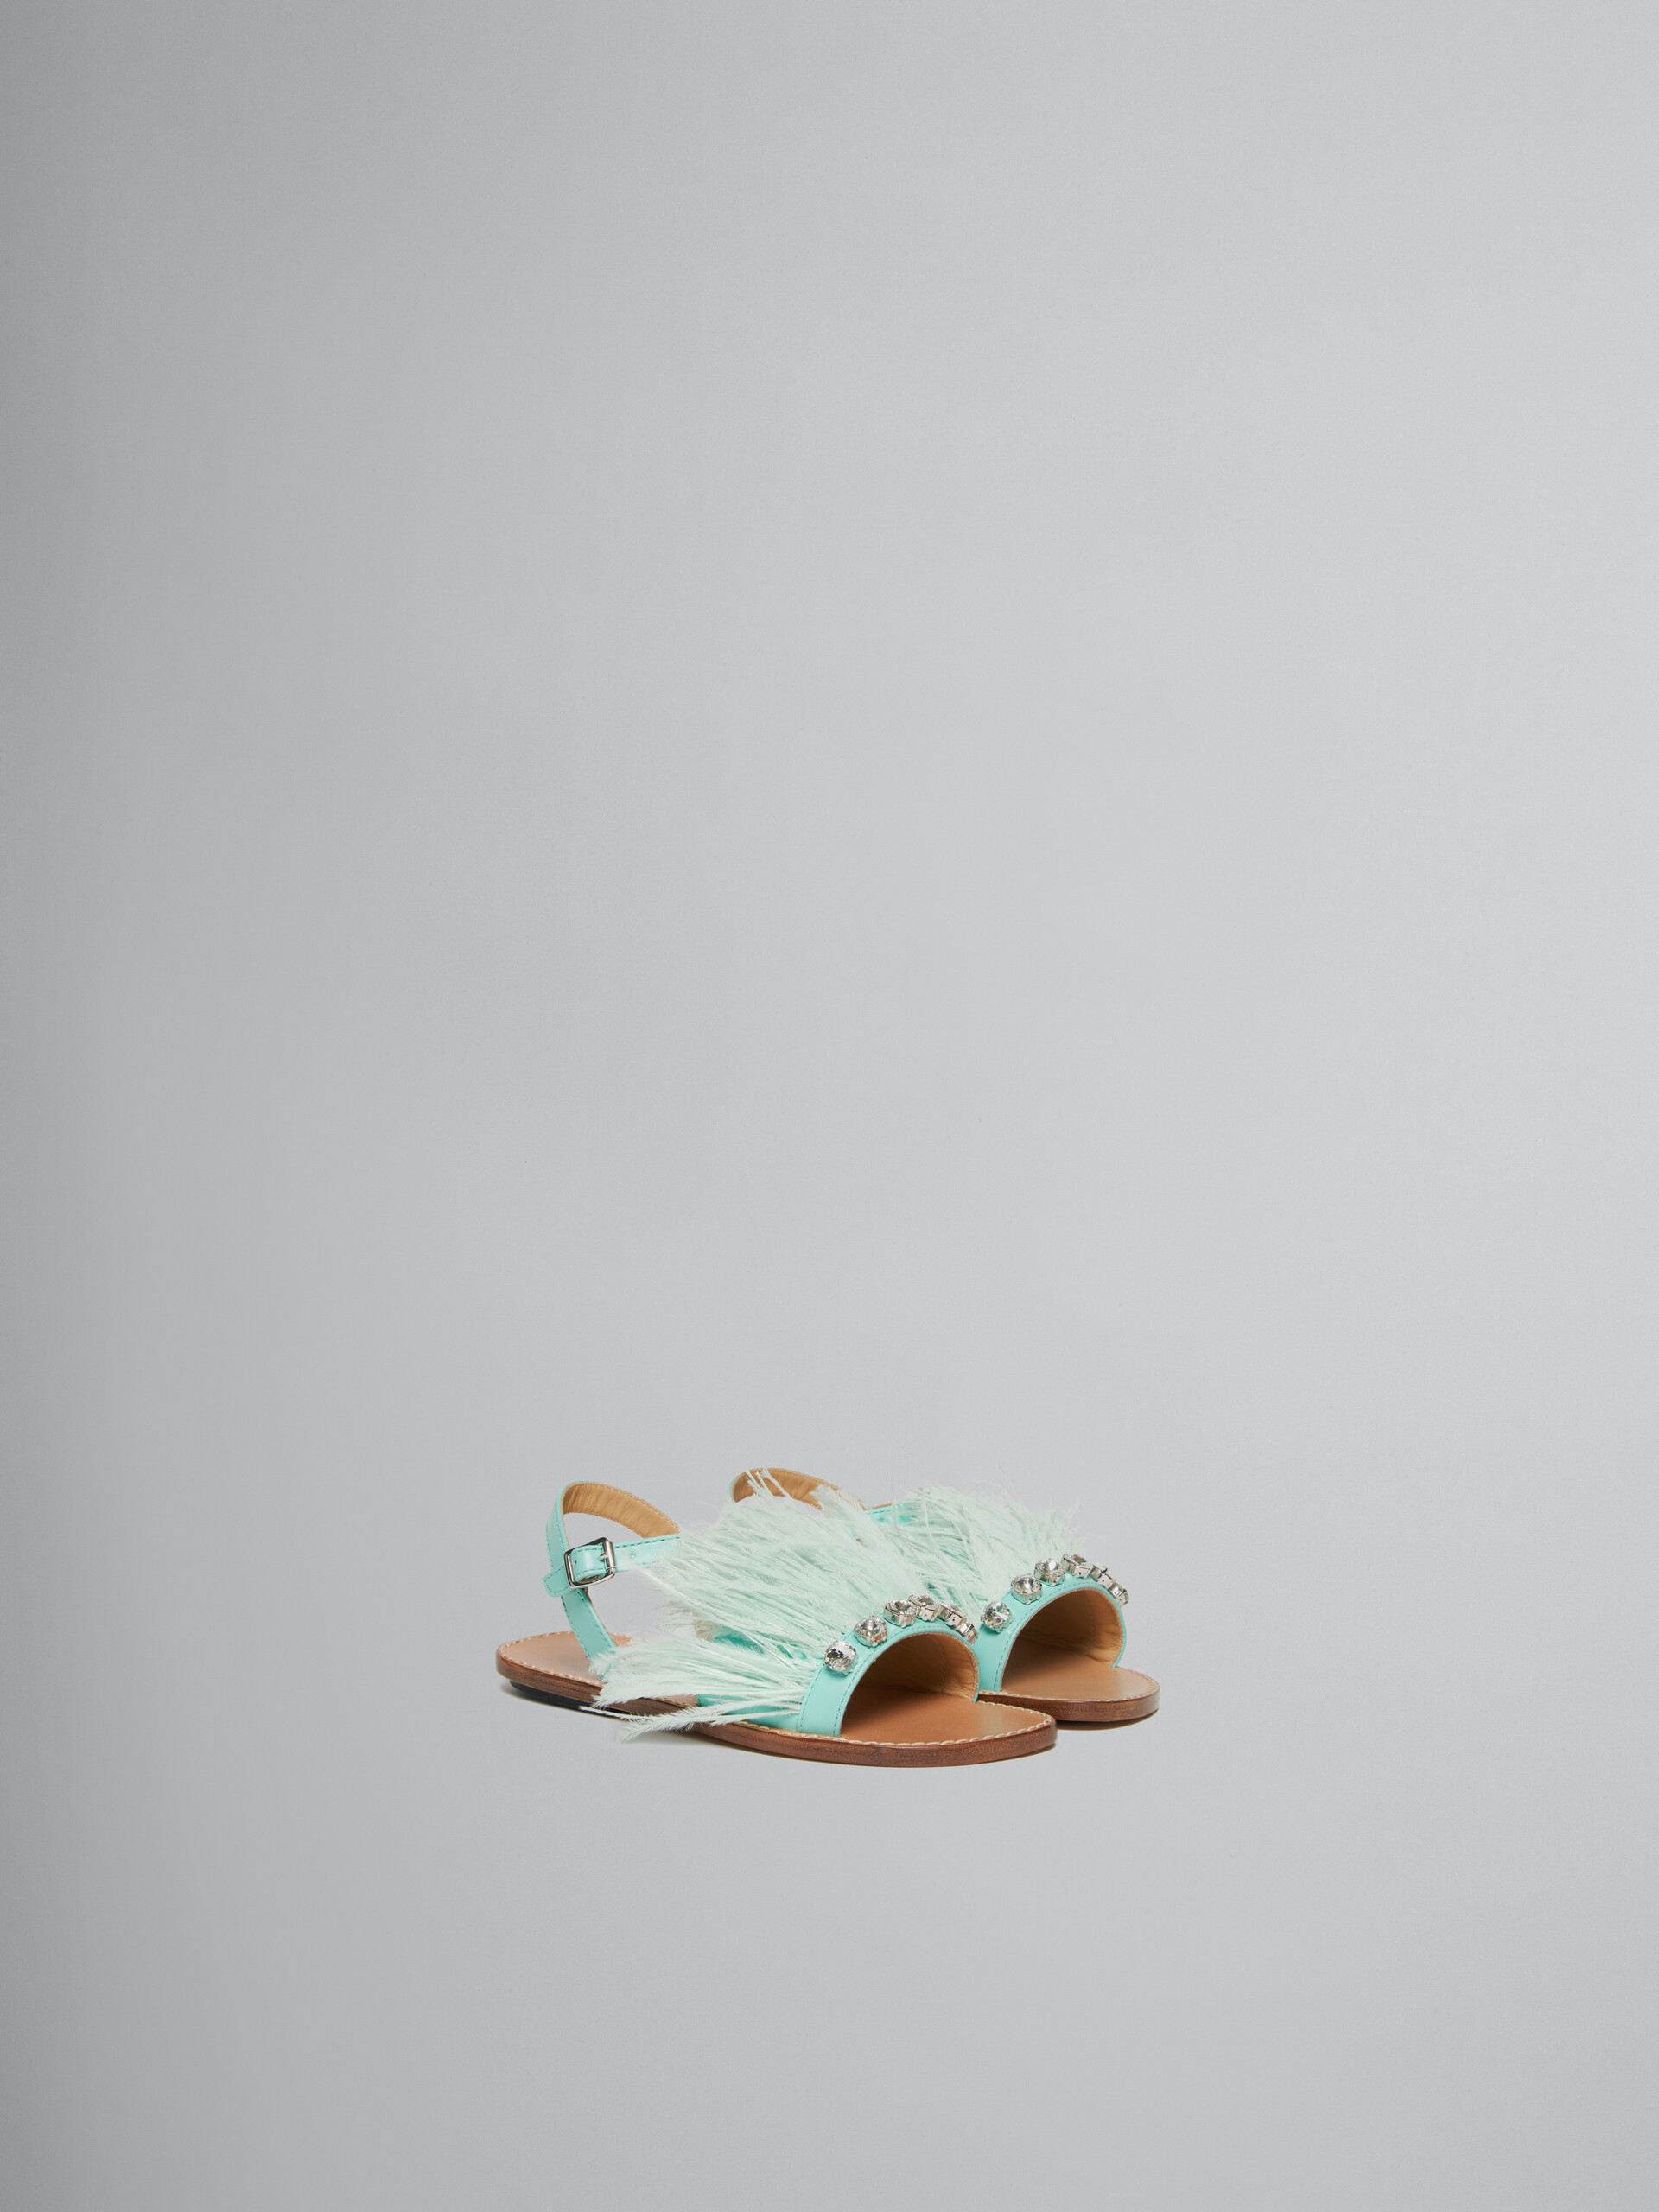 Sandales Marabou à plume turquoise - ENFANT - Image 2